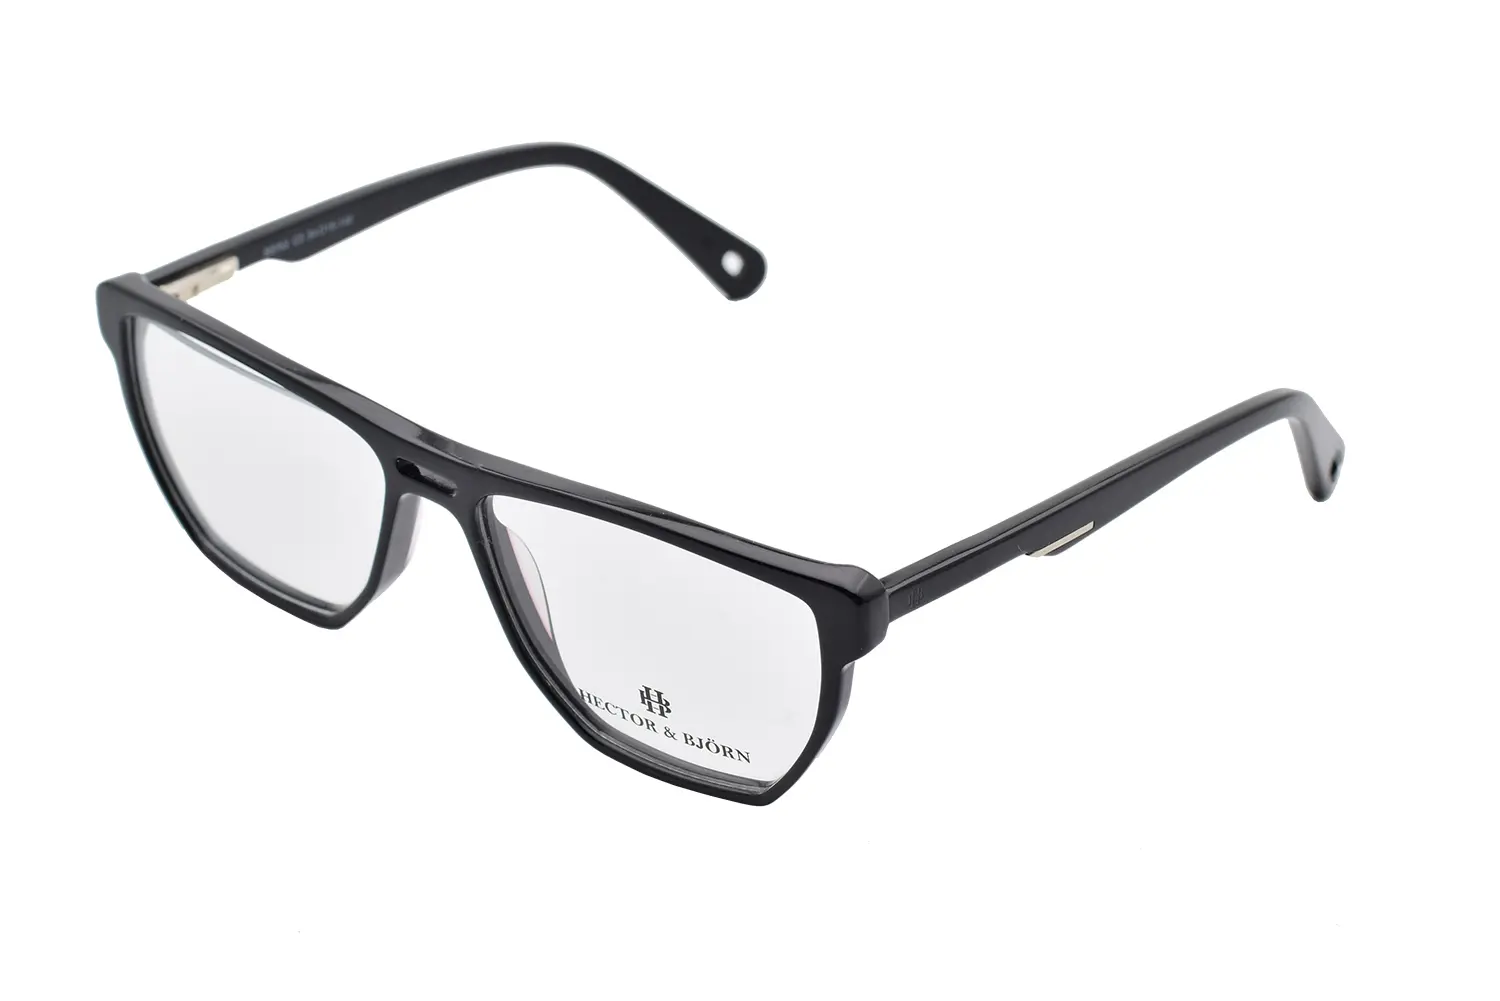 عینک طبی HECTOR & BJORN مدل BERG C3 - دکترعینک